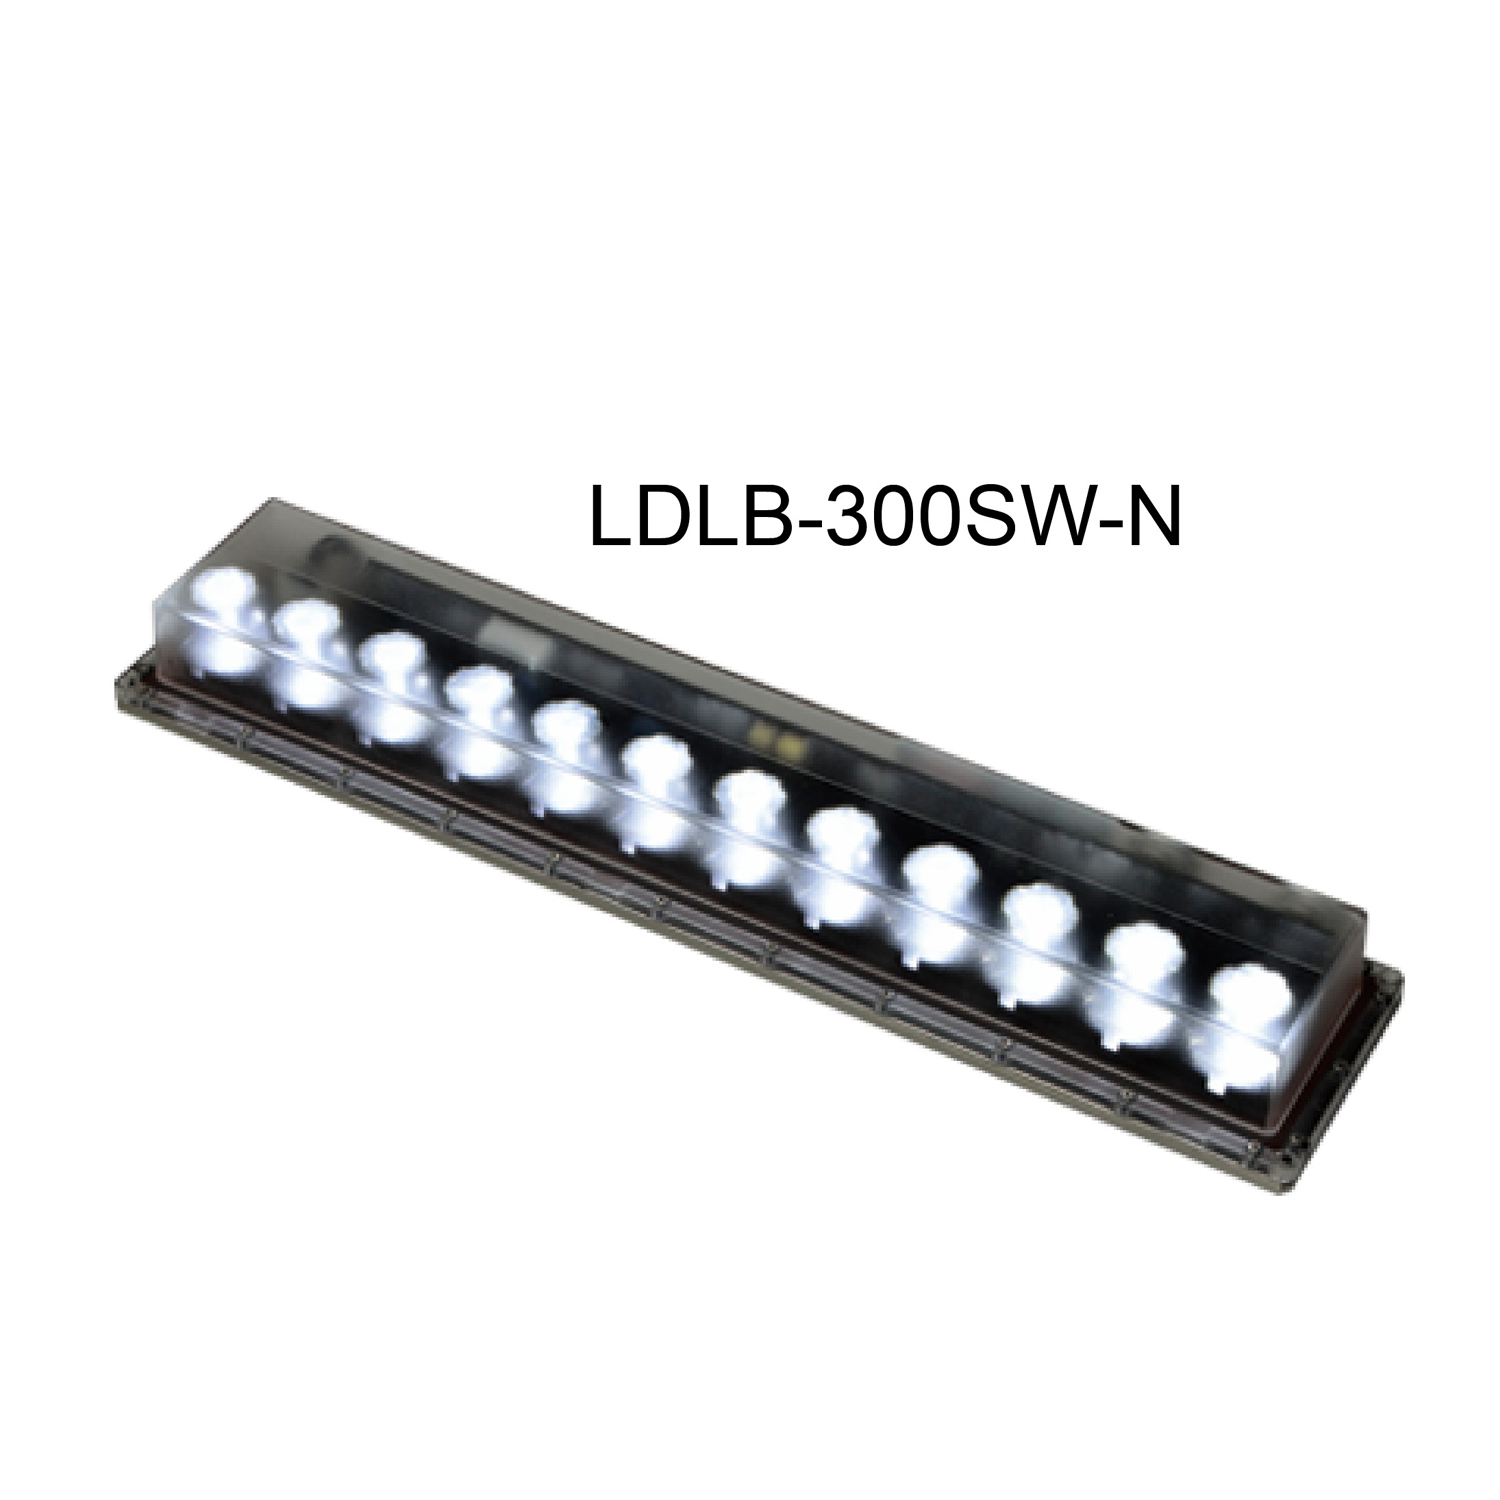 LDLB-300SW-N